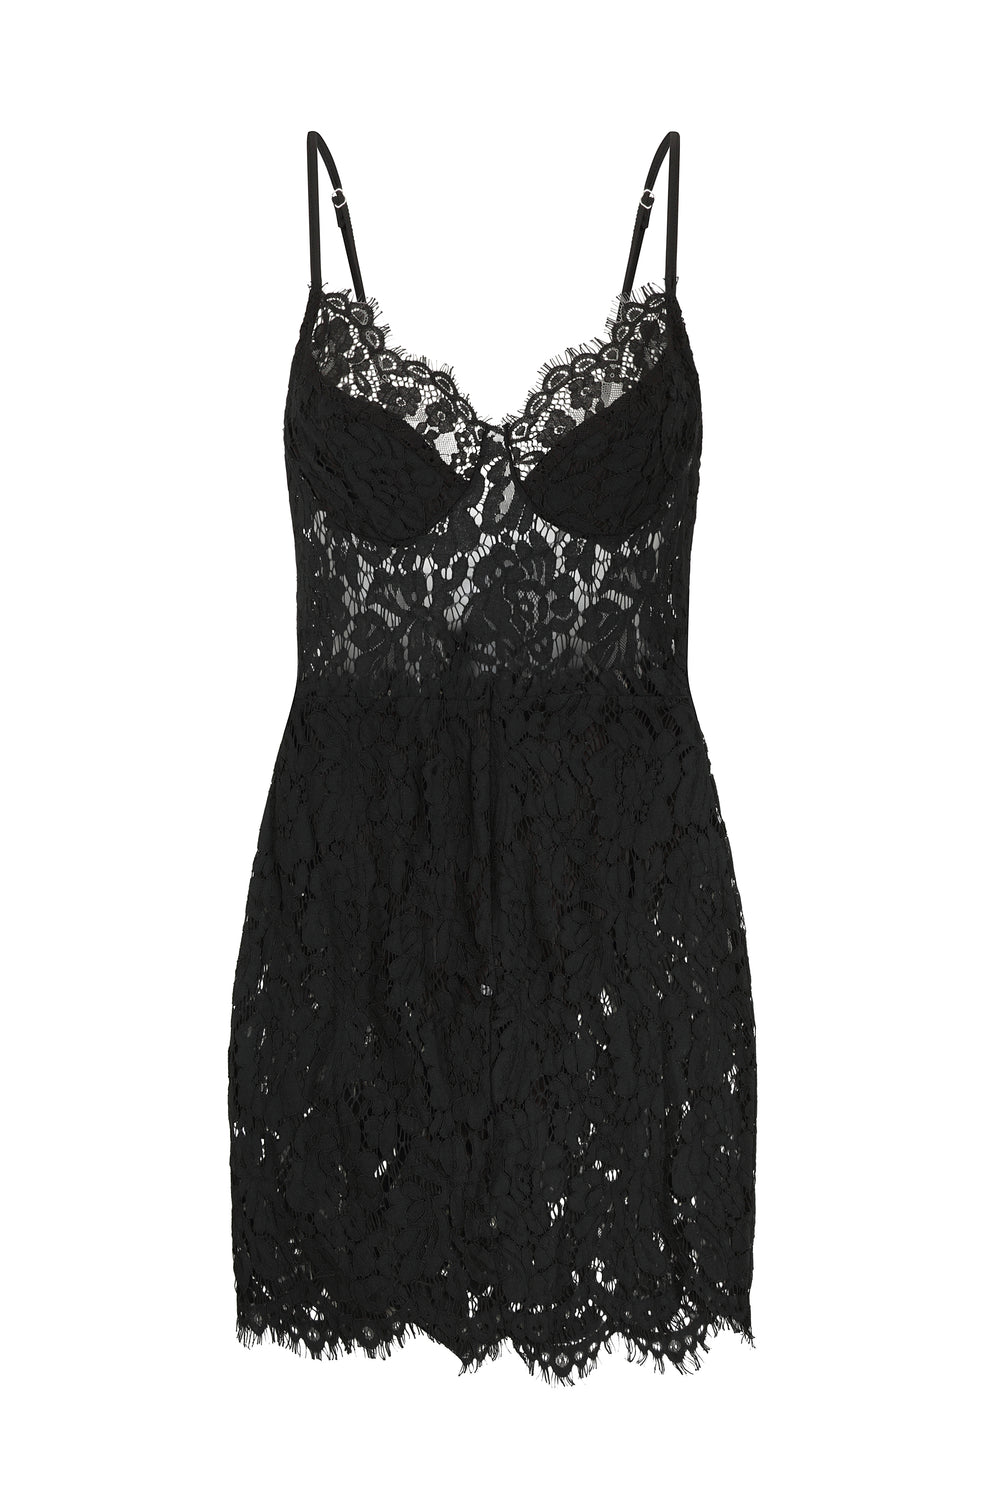 Sheer Me Up Lace Black Bodycon Mini Slit Dress